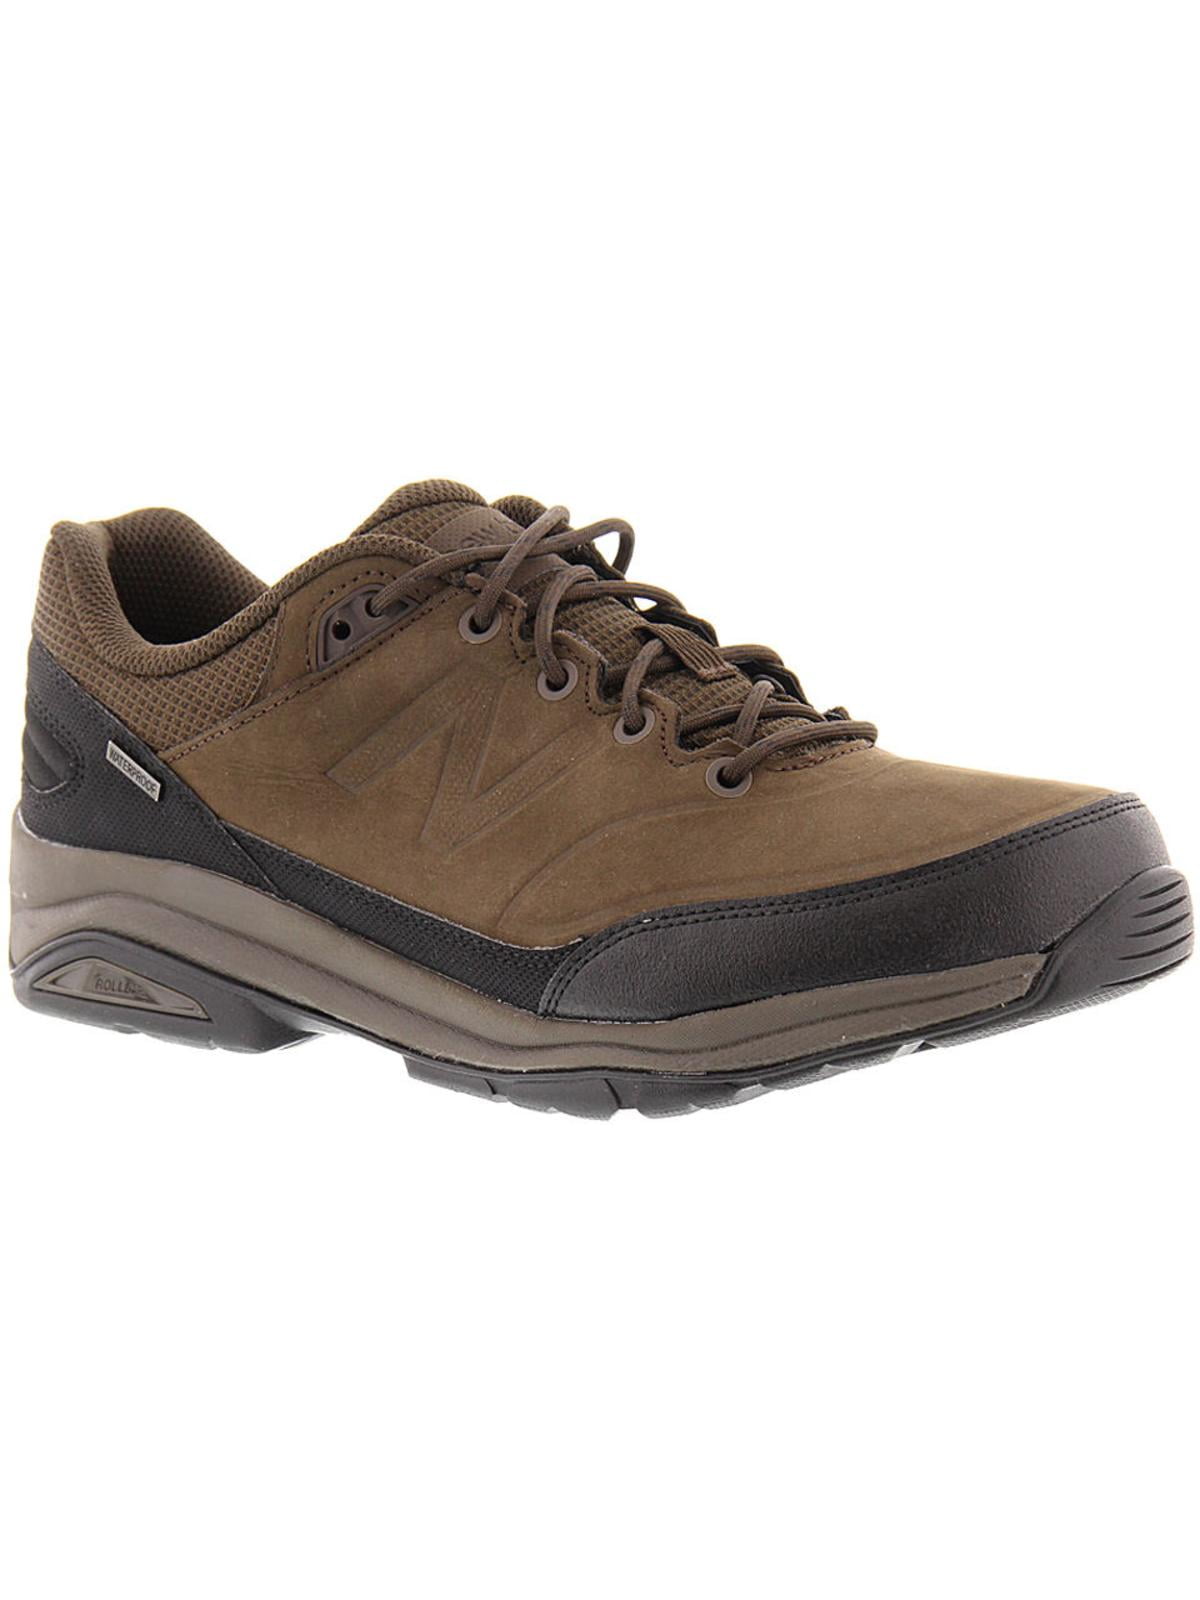 verstoring maandag opraken New Balance Mens 1300 Country Walker Waterproof Hiking, Trail Shoes Brown -  Walmart.com